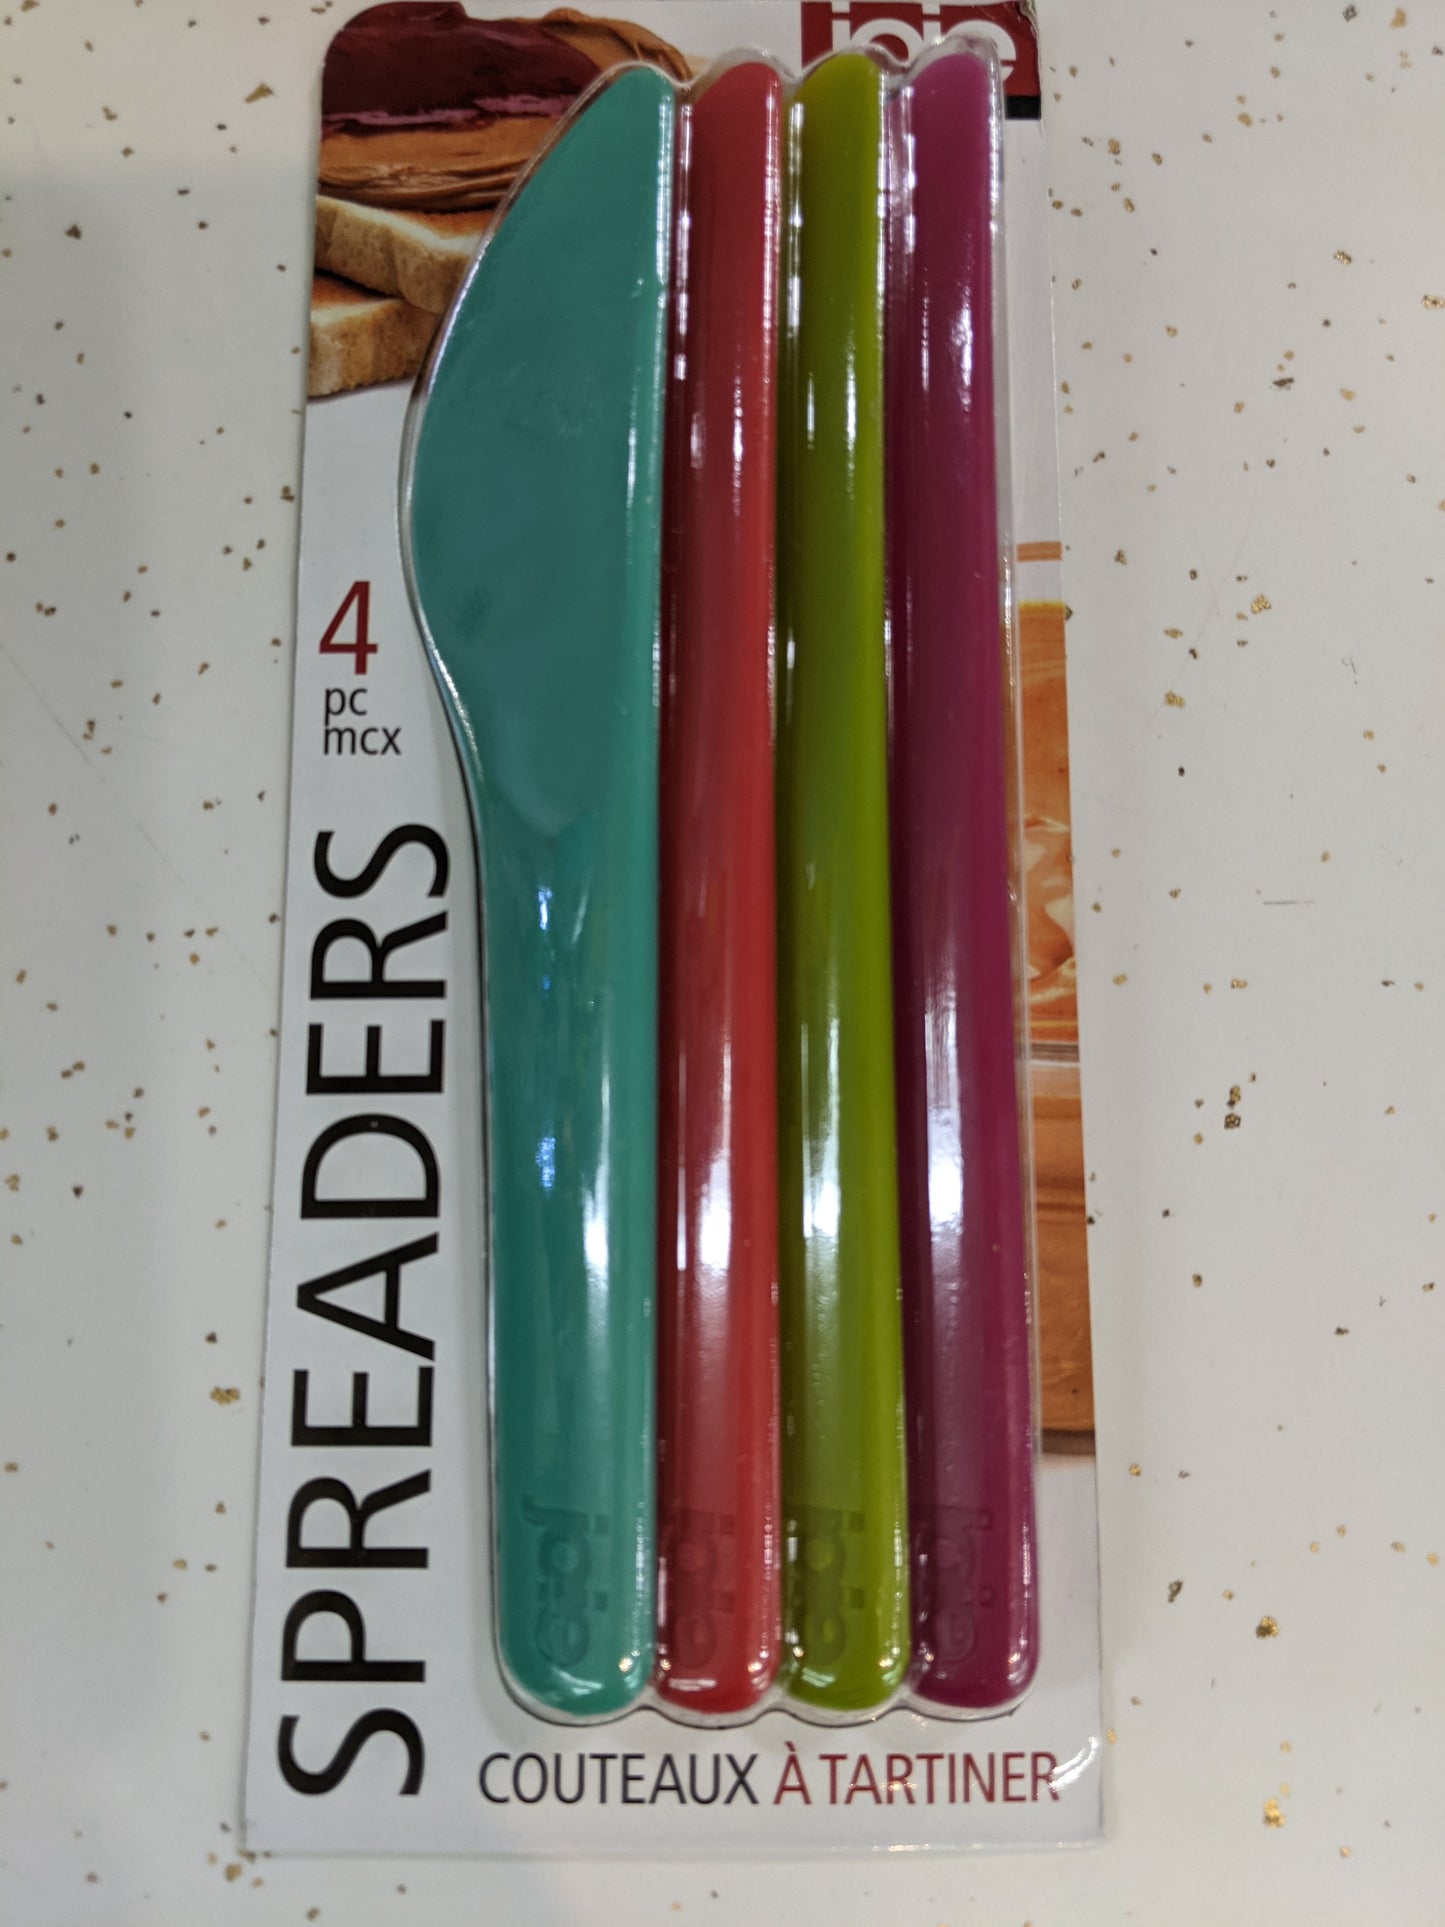 Spreaders - 4 pack